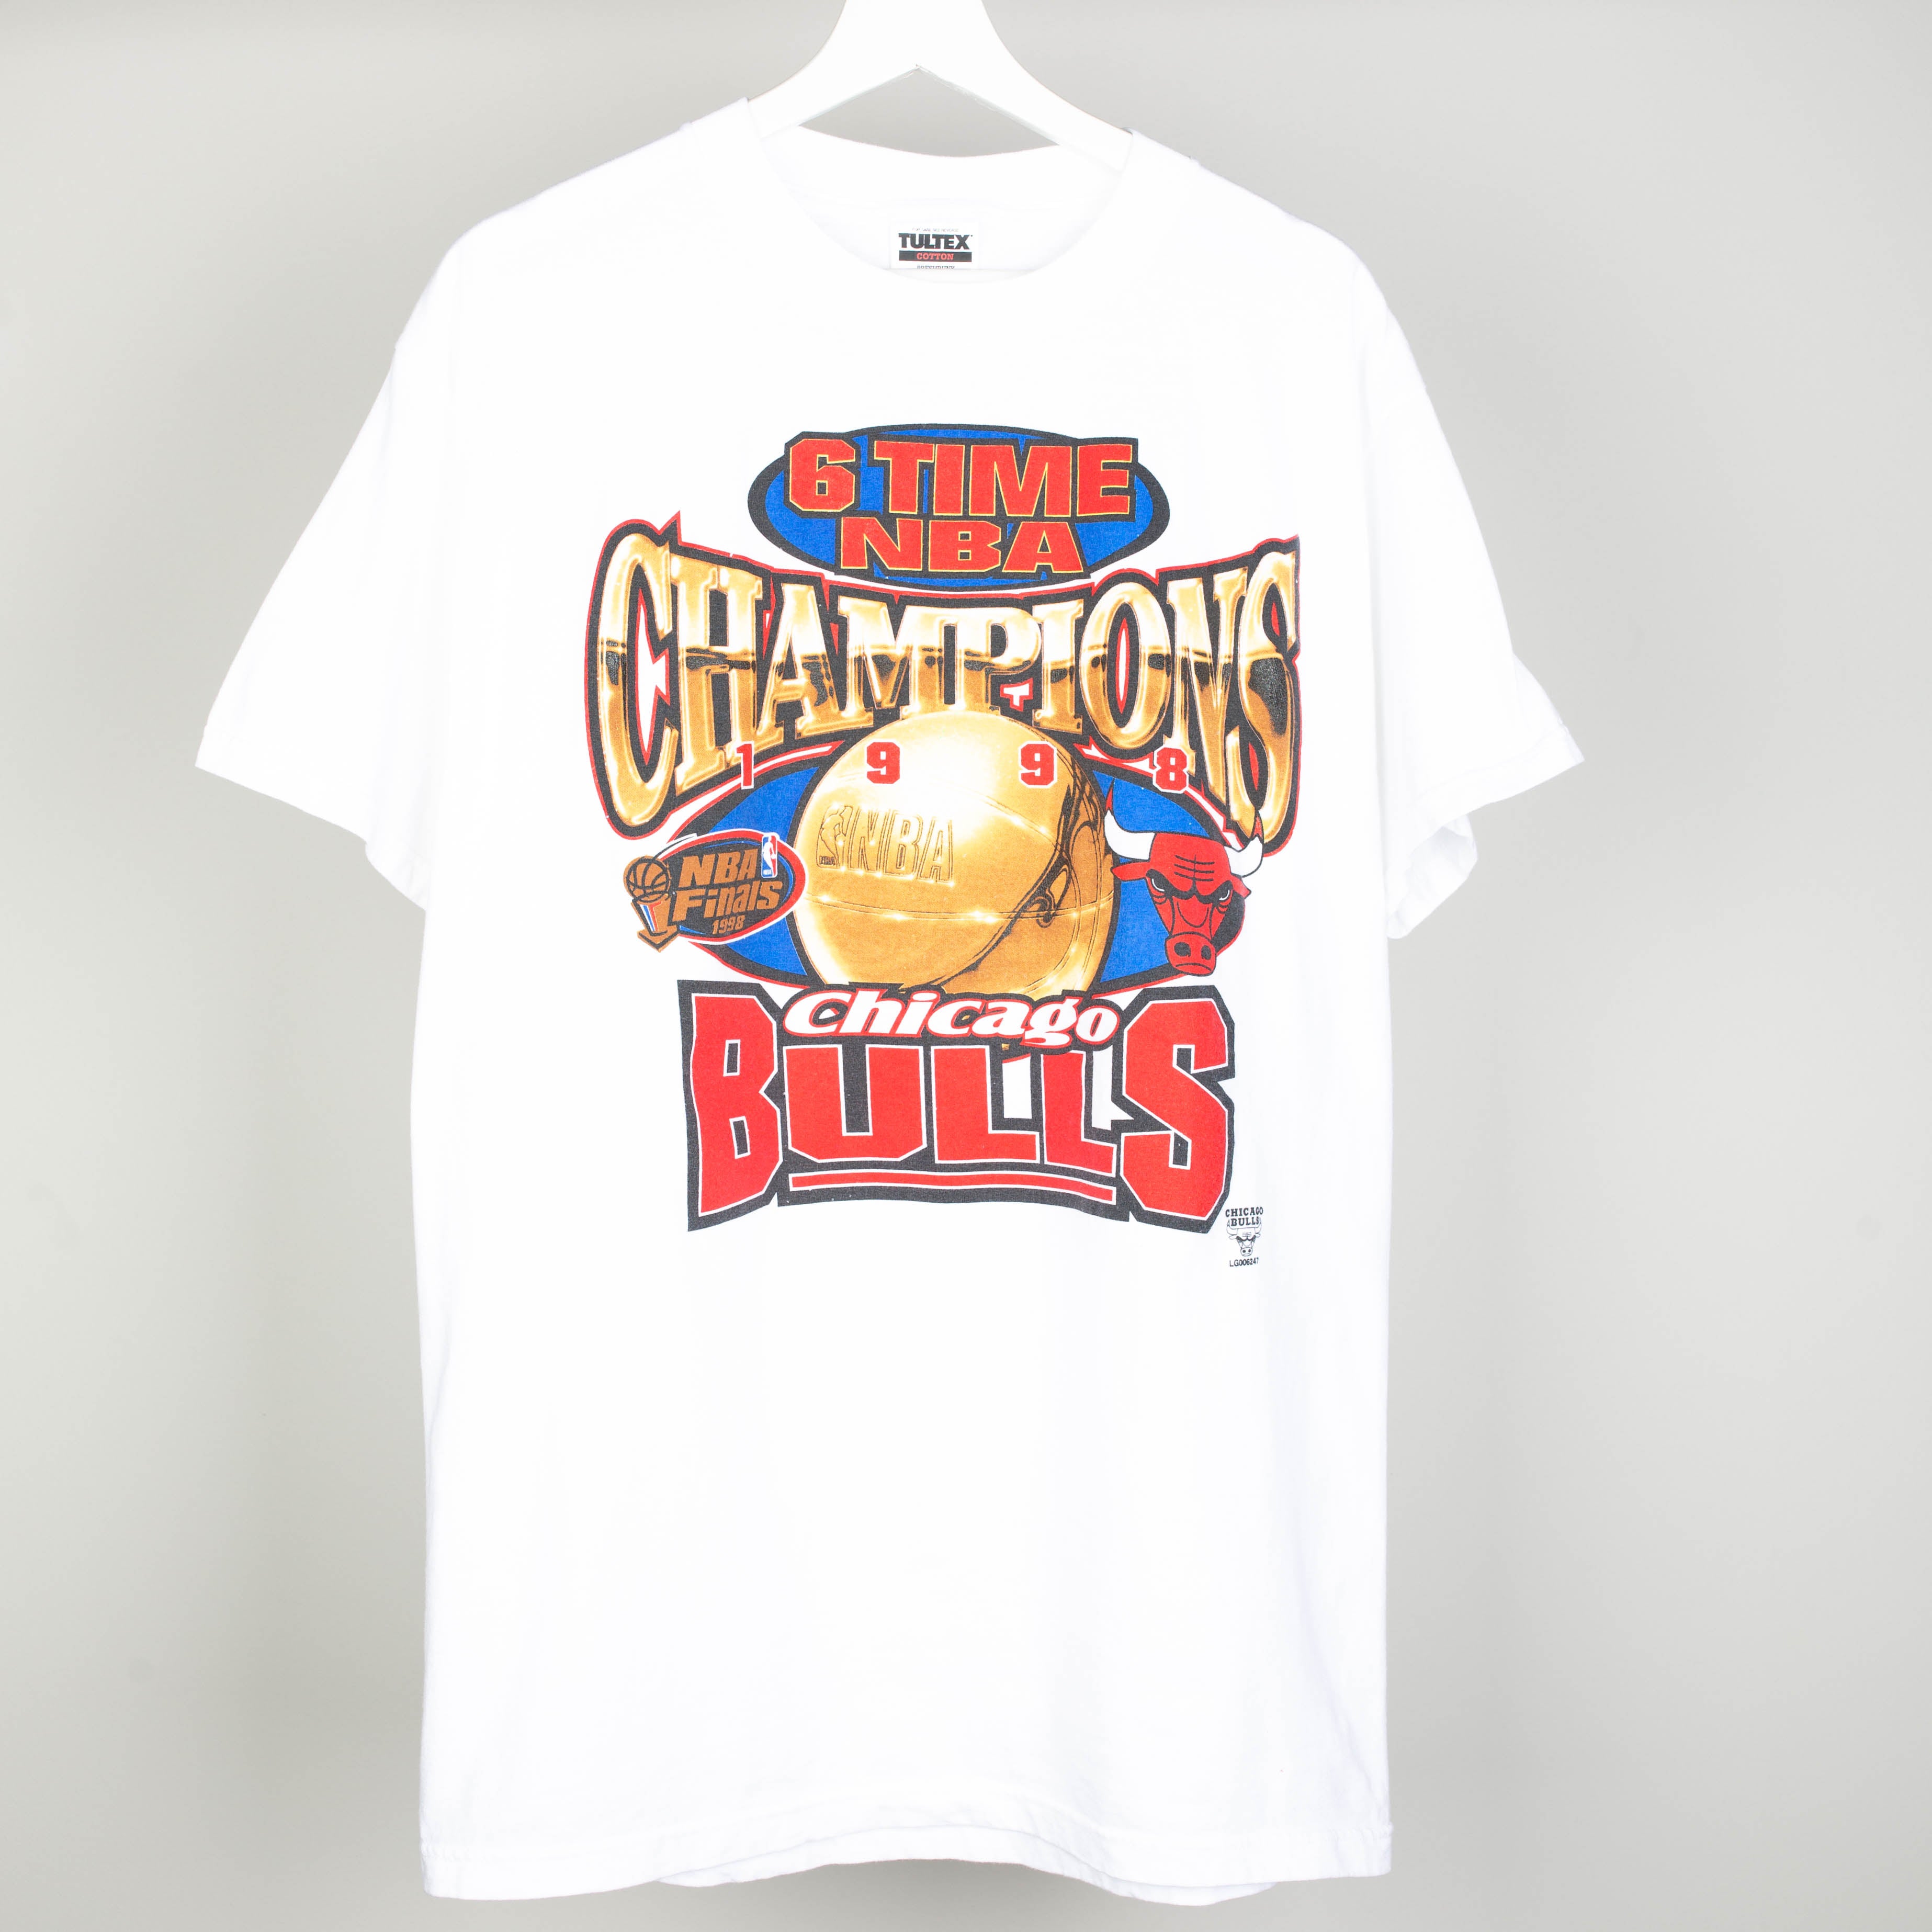 1998 bulls championship shirt